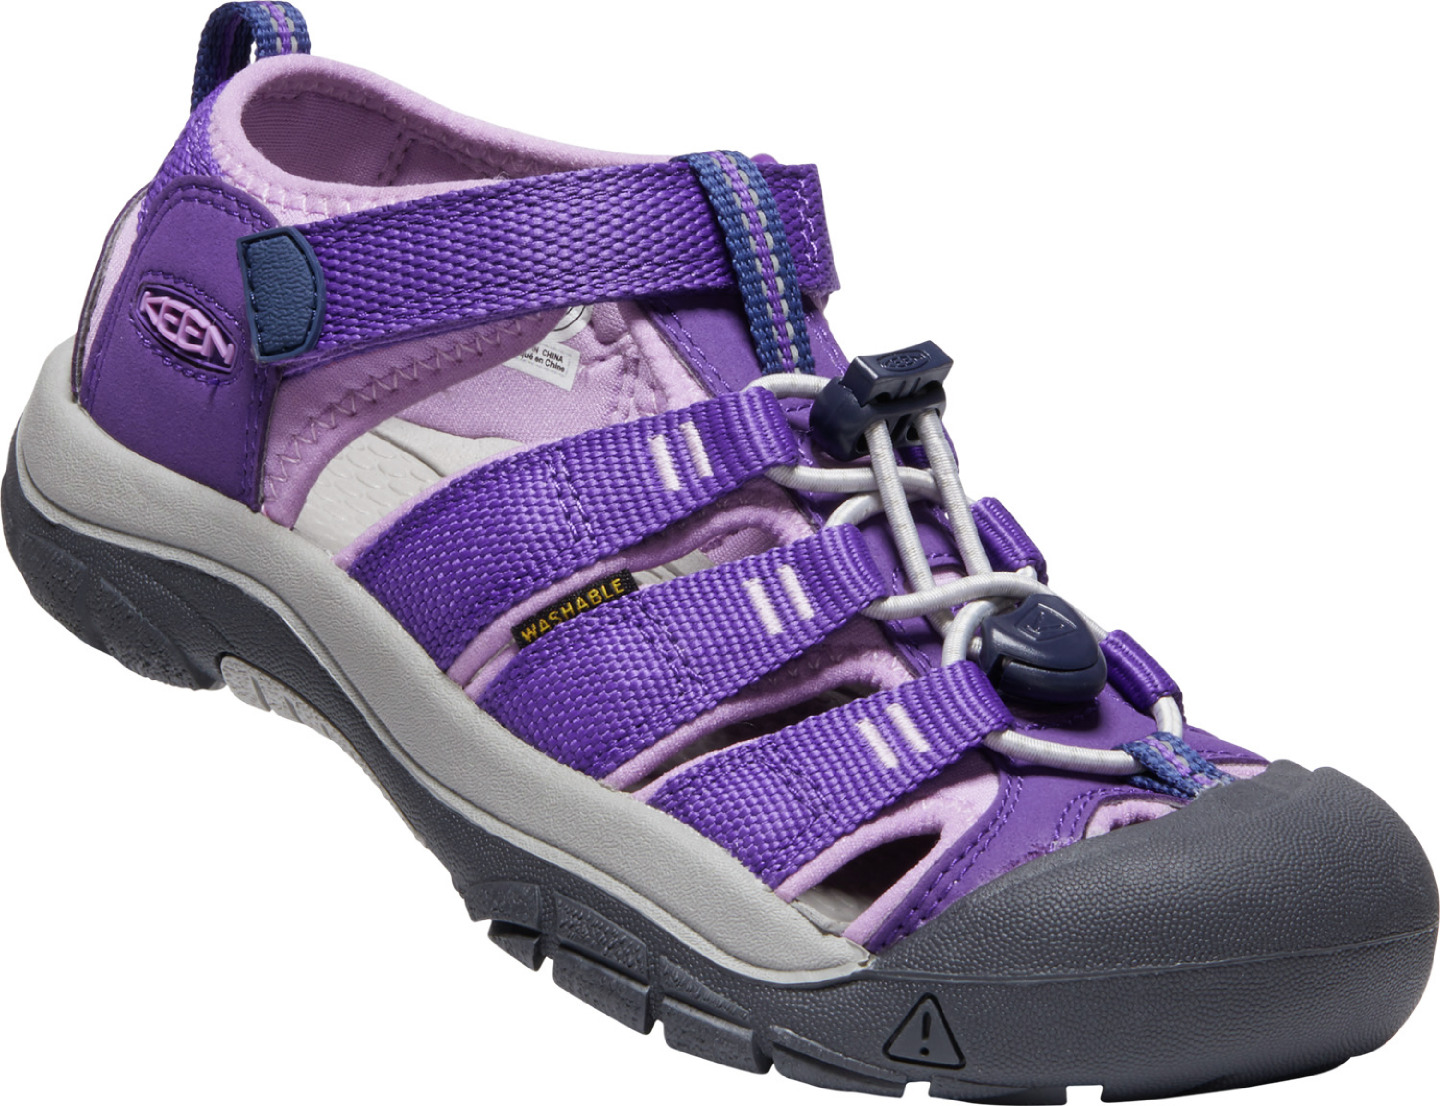 Keen NEWPORT H2 YOUTH tillandsia purple/englsh lvndr Velikost: 36 dětské sandály